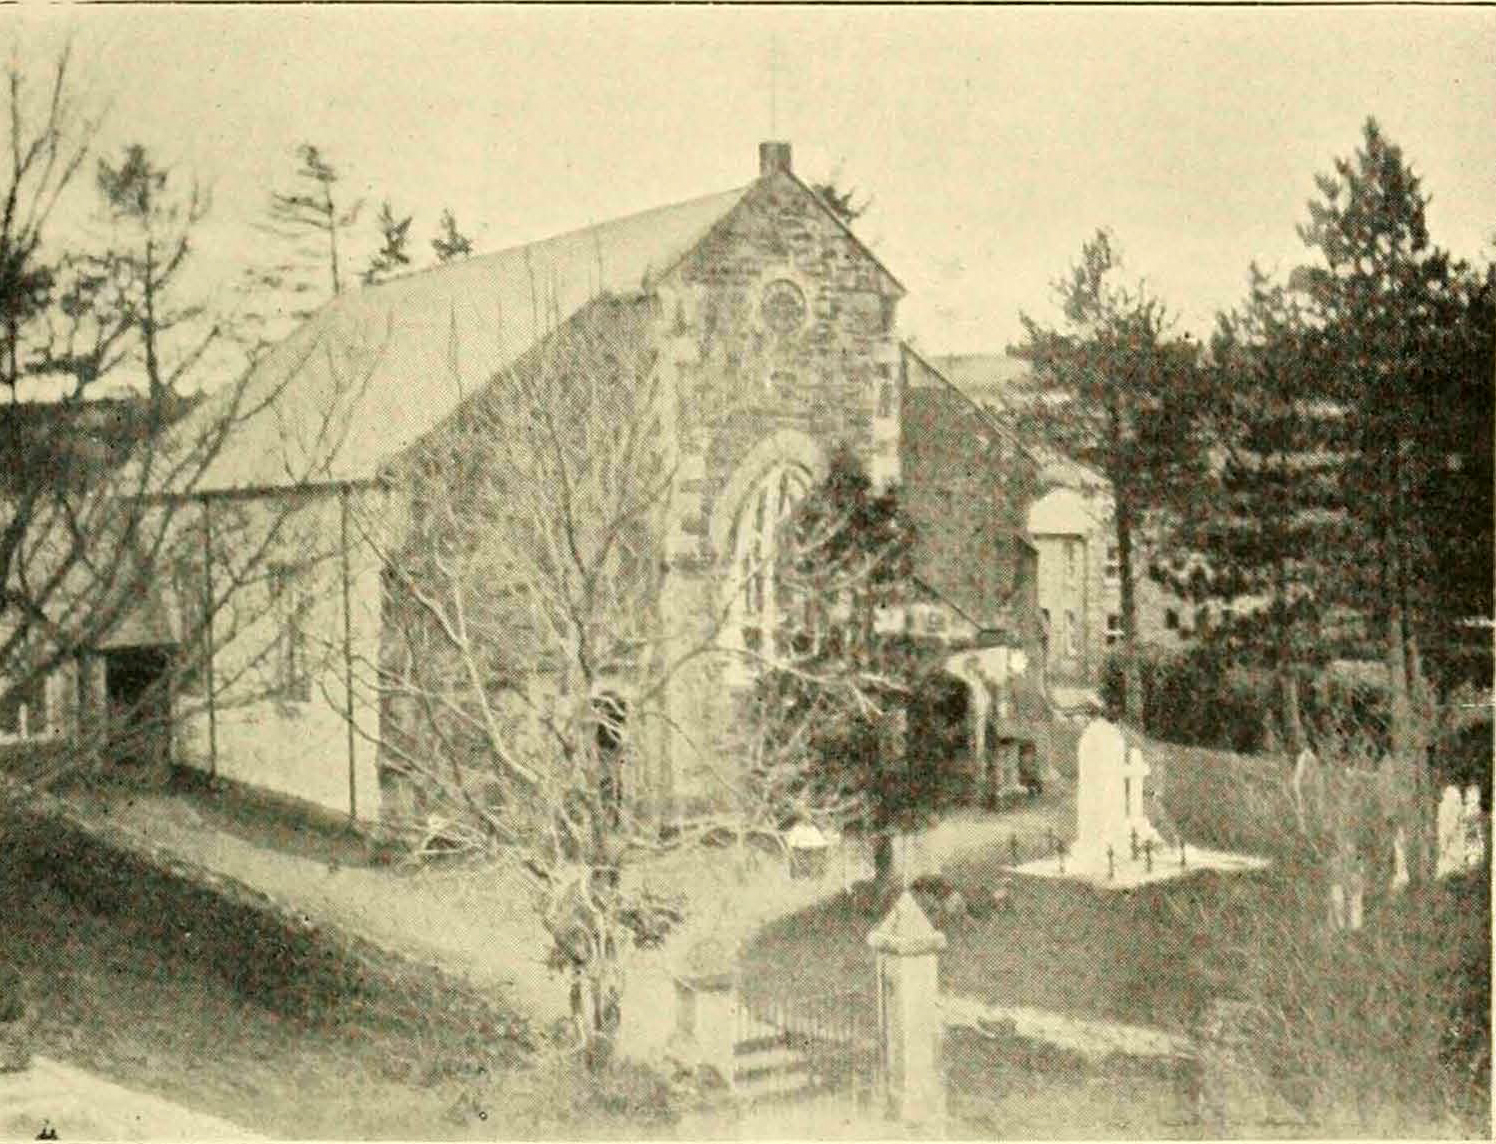 Altarnun Wesleyan Chapel in 1901